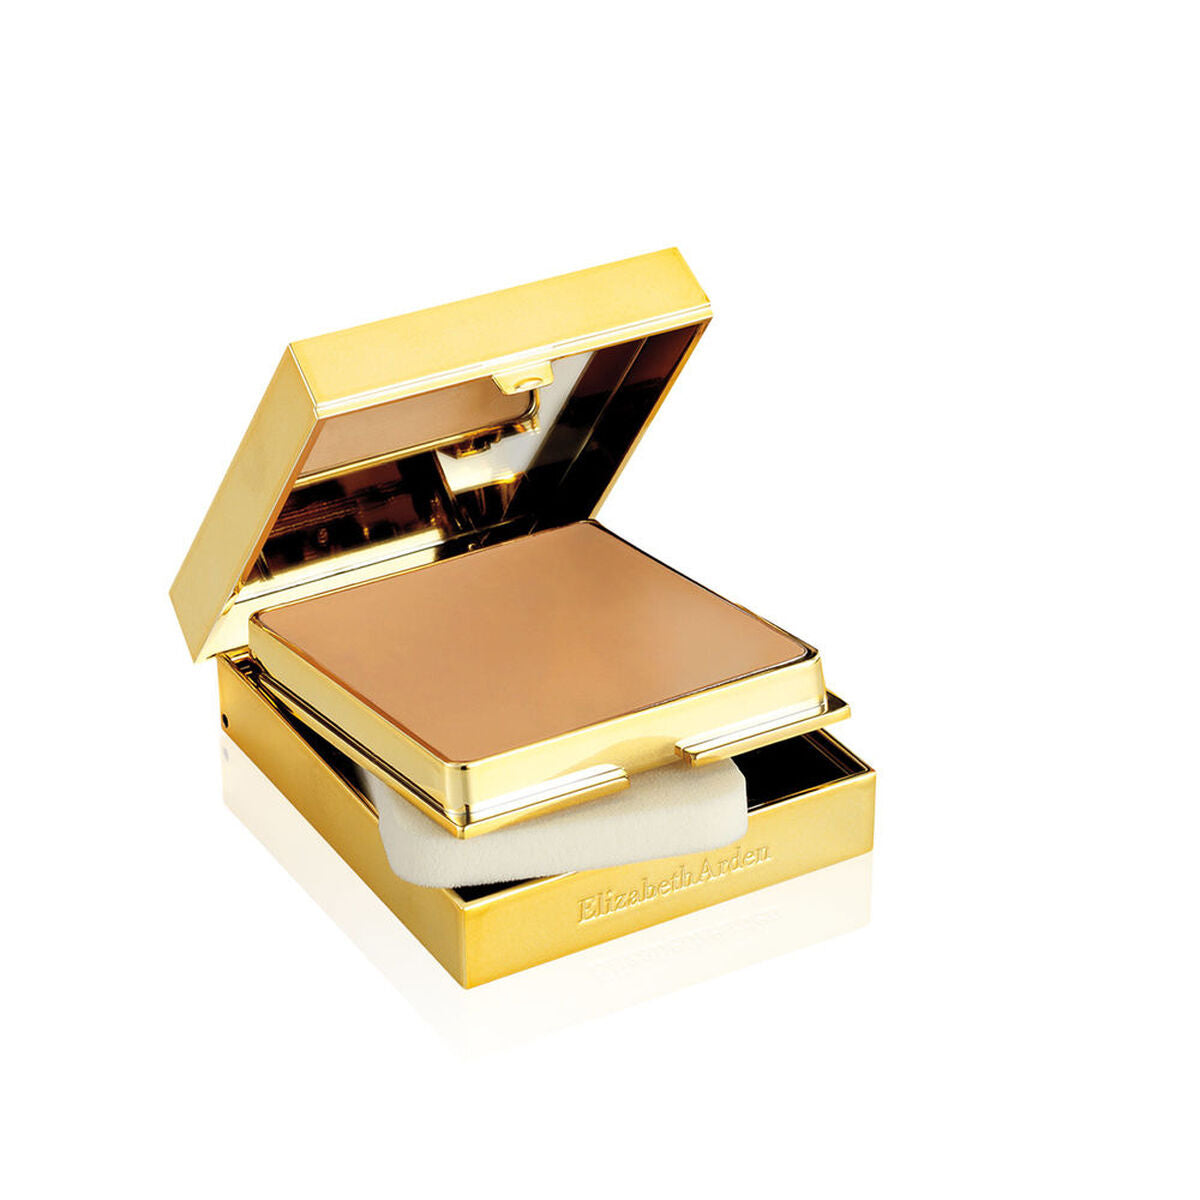 Cremige Make-up Grundierung Elizabeth Arden Flawless Finish Sponge Nº 06-toasty beige 23 g - CA International 